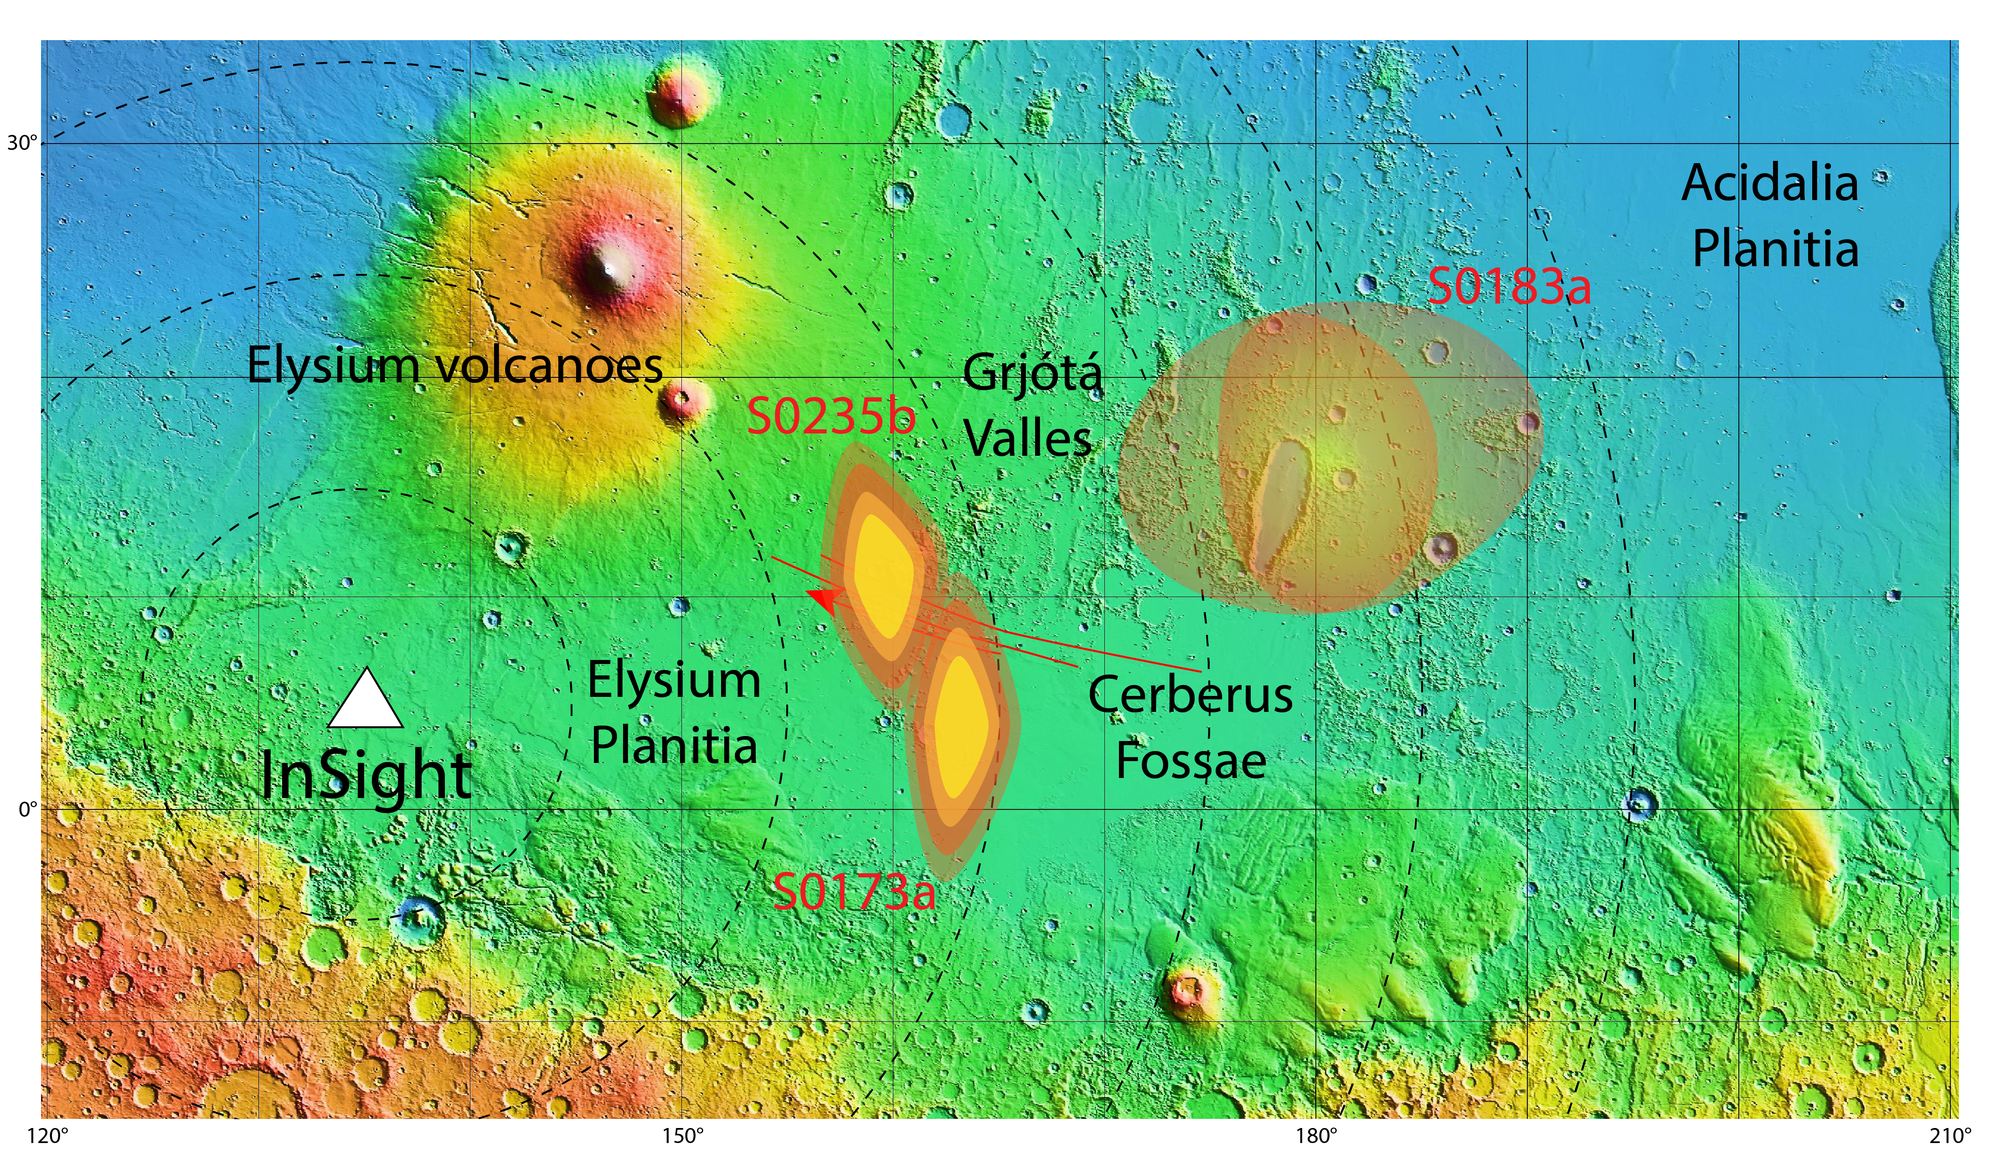 InSight locates marsquakes in the Cerberus Fossae region